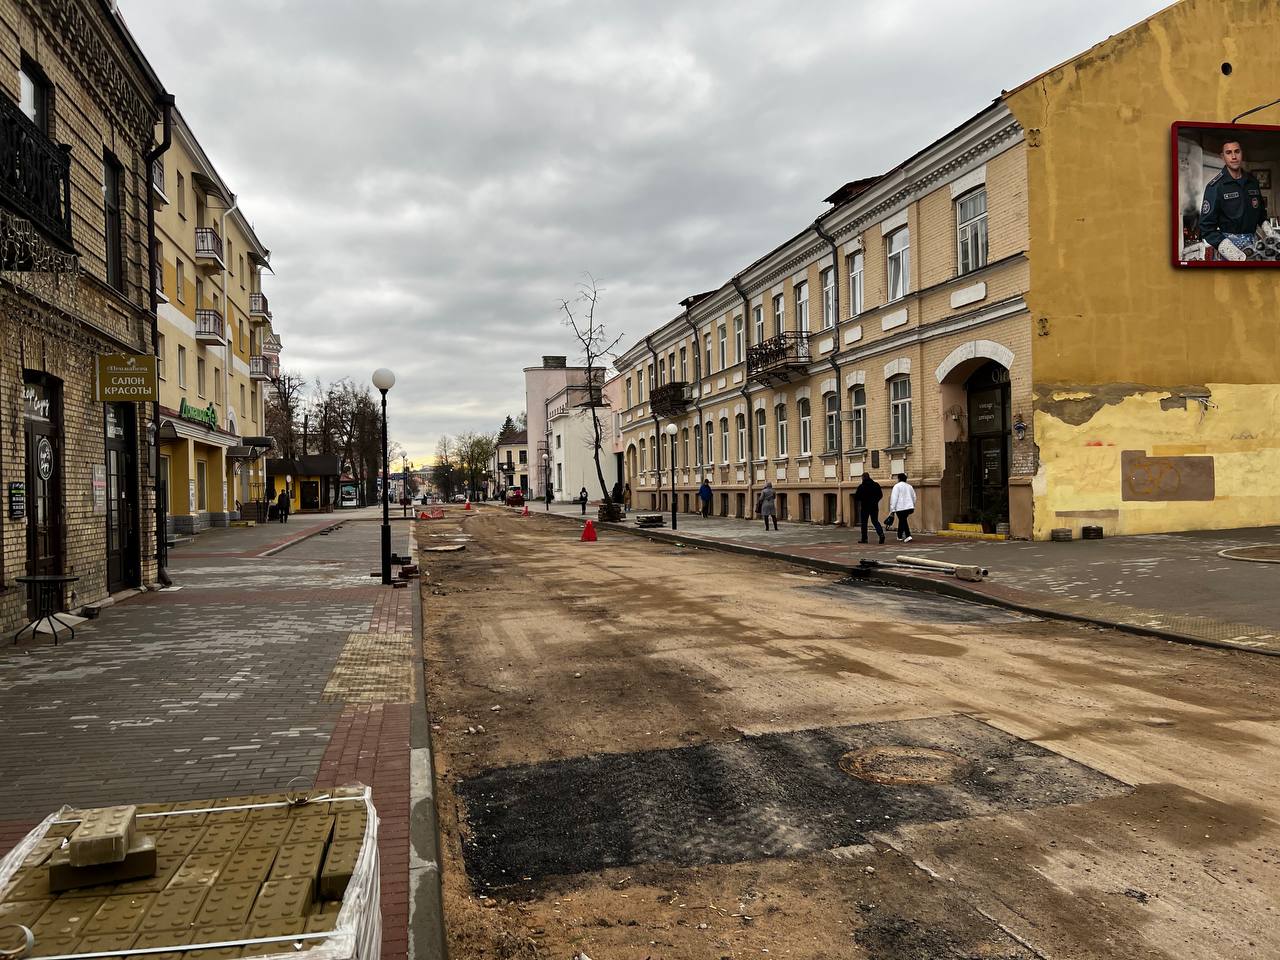 Два месяца ремонта: как сейчас выглядит улица Ожешко в Гродно